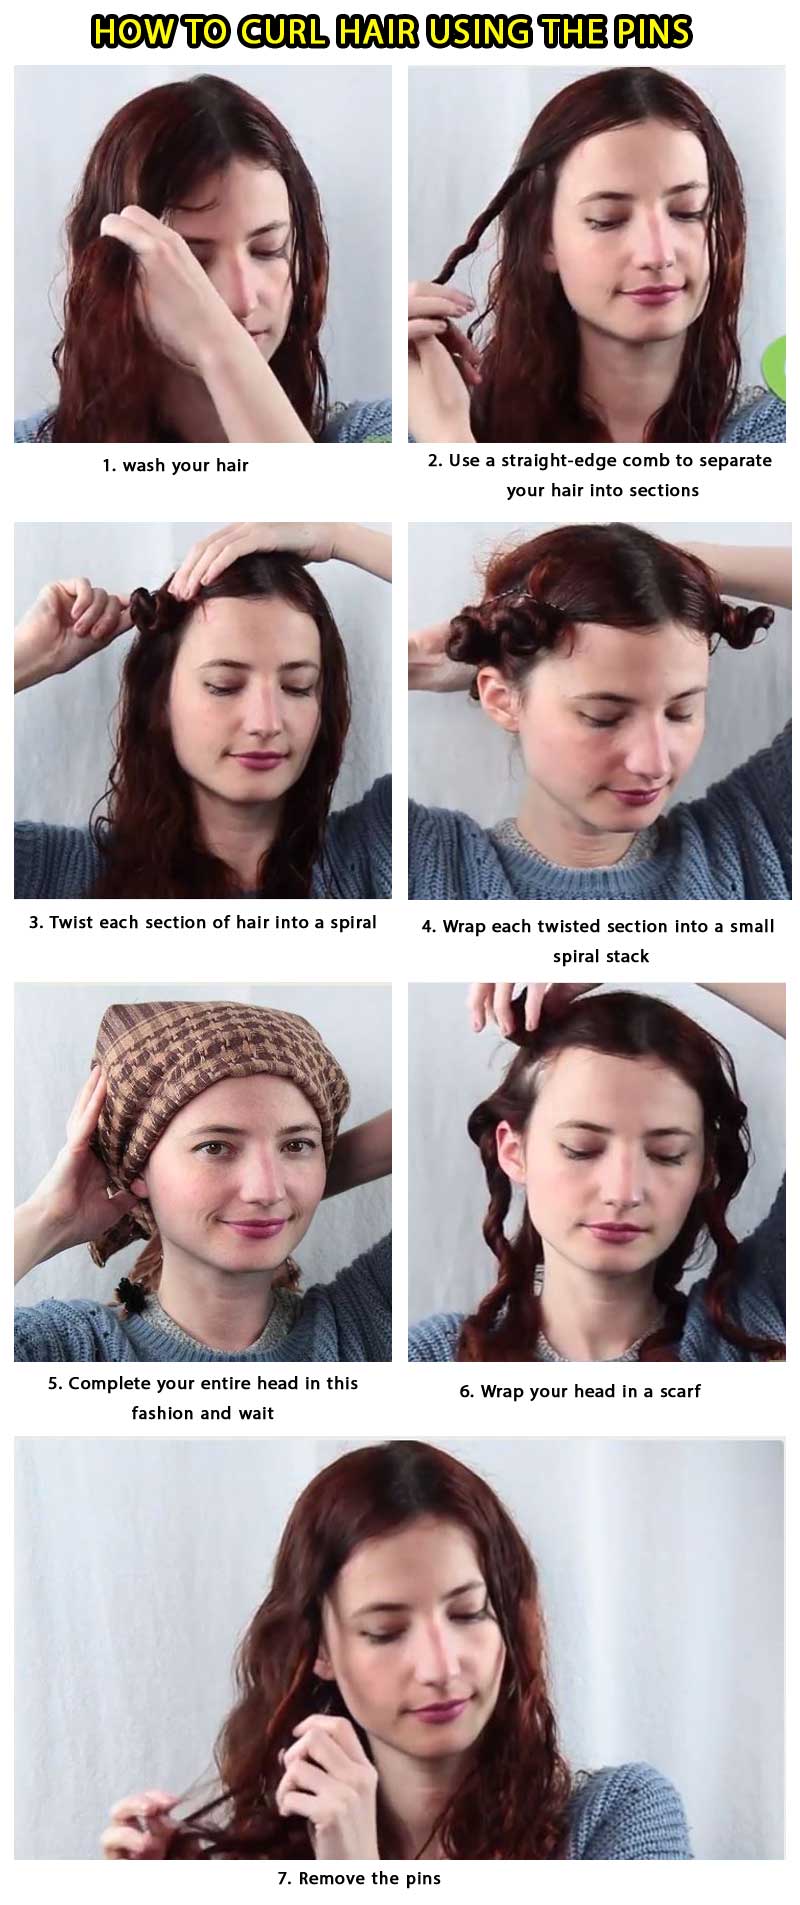 make curl hair using pins